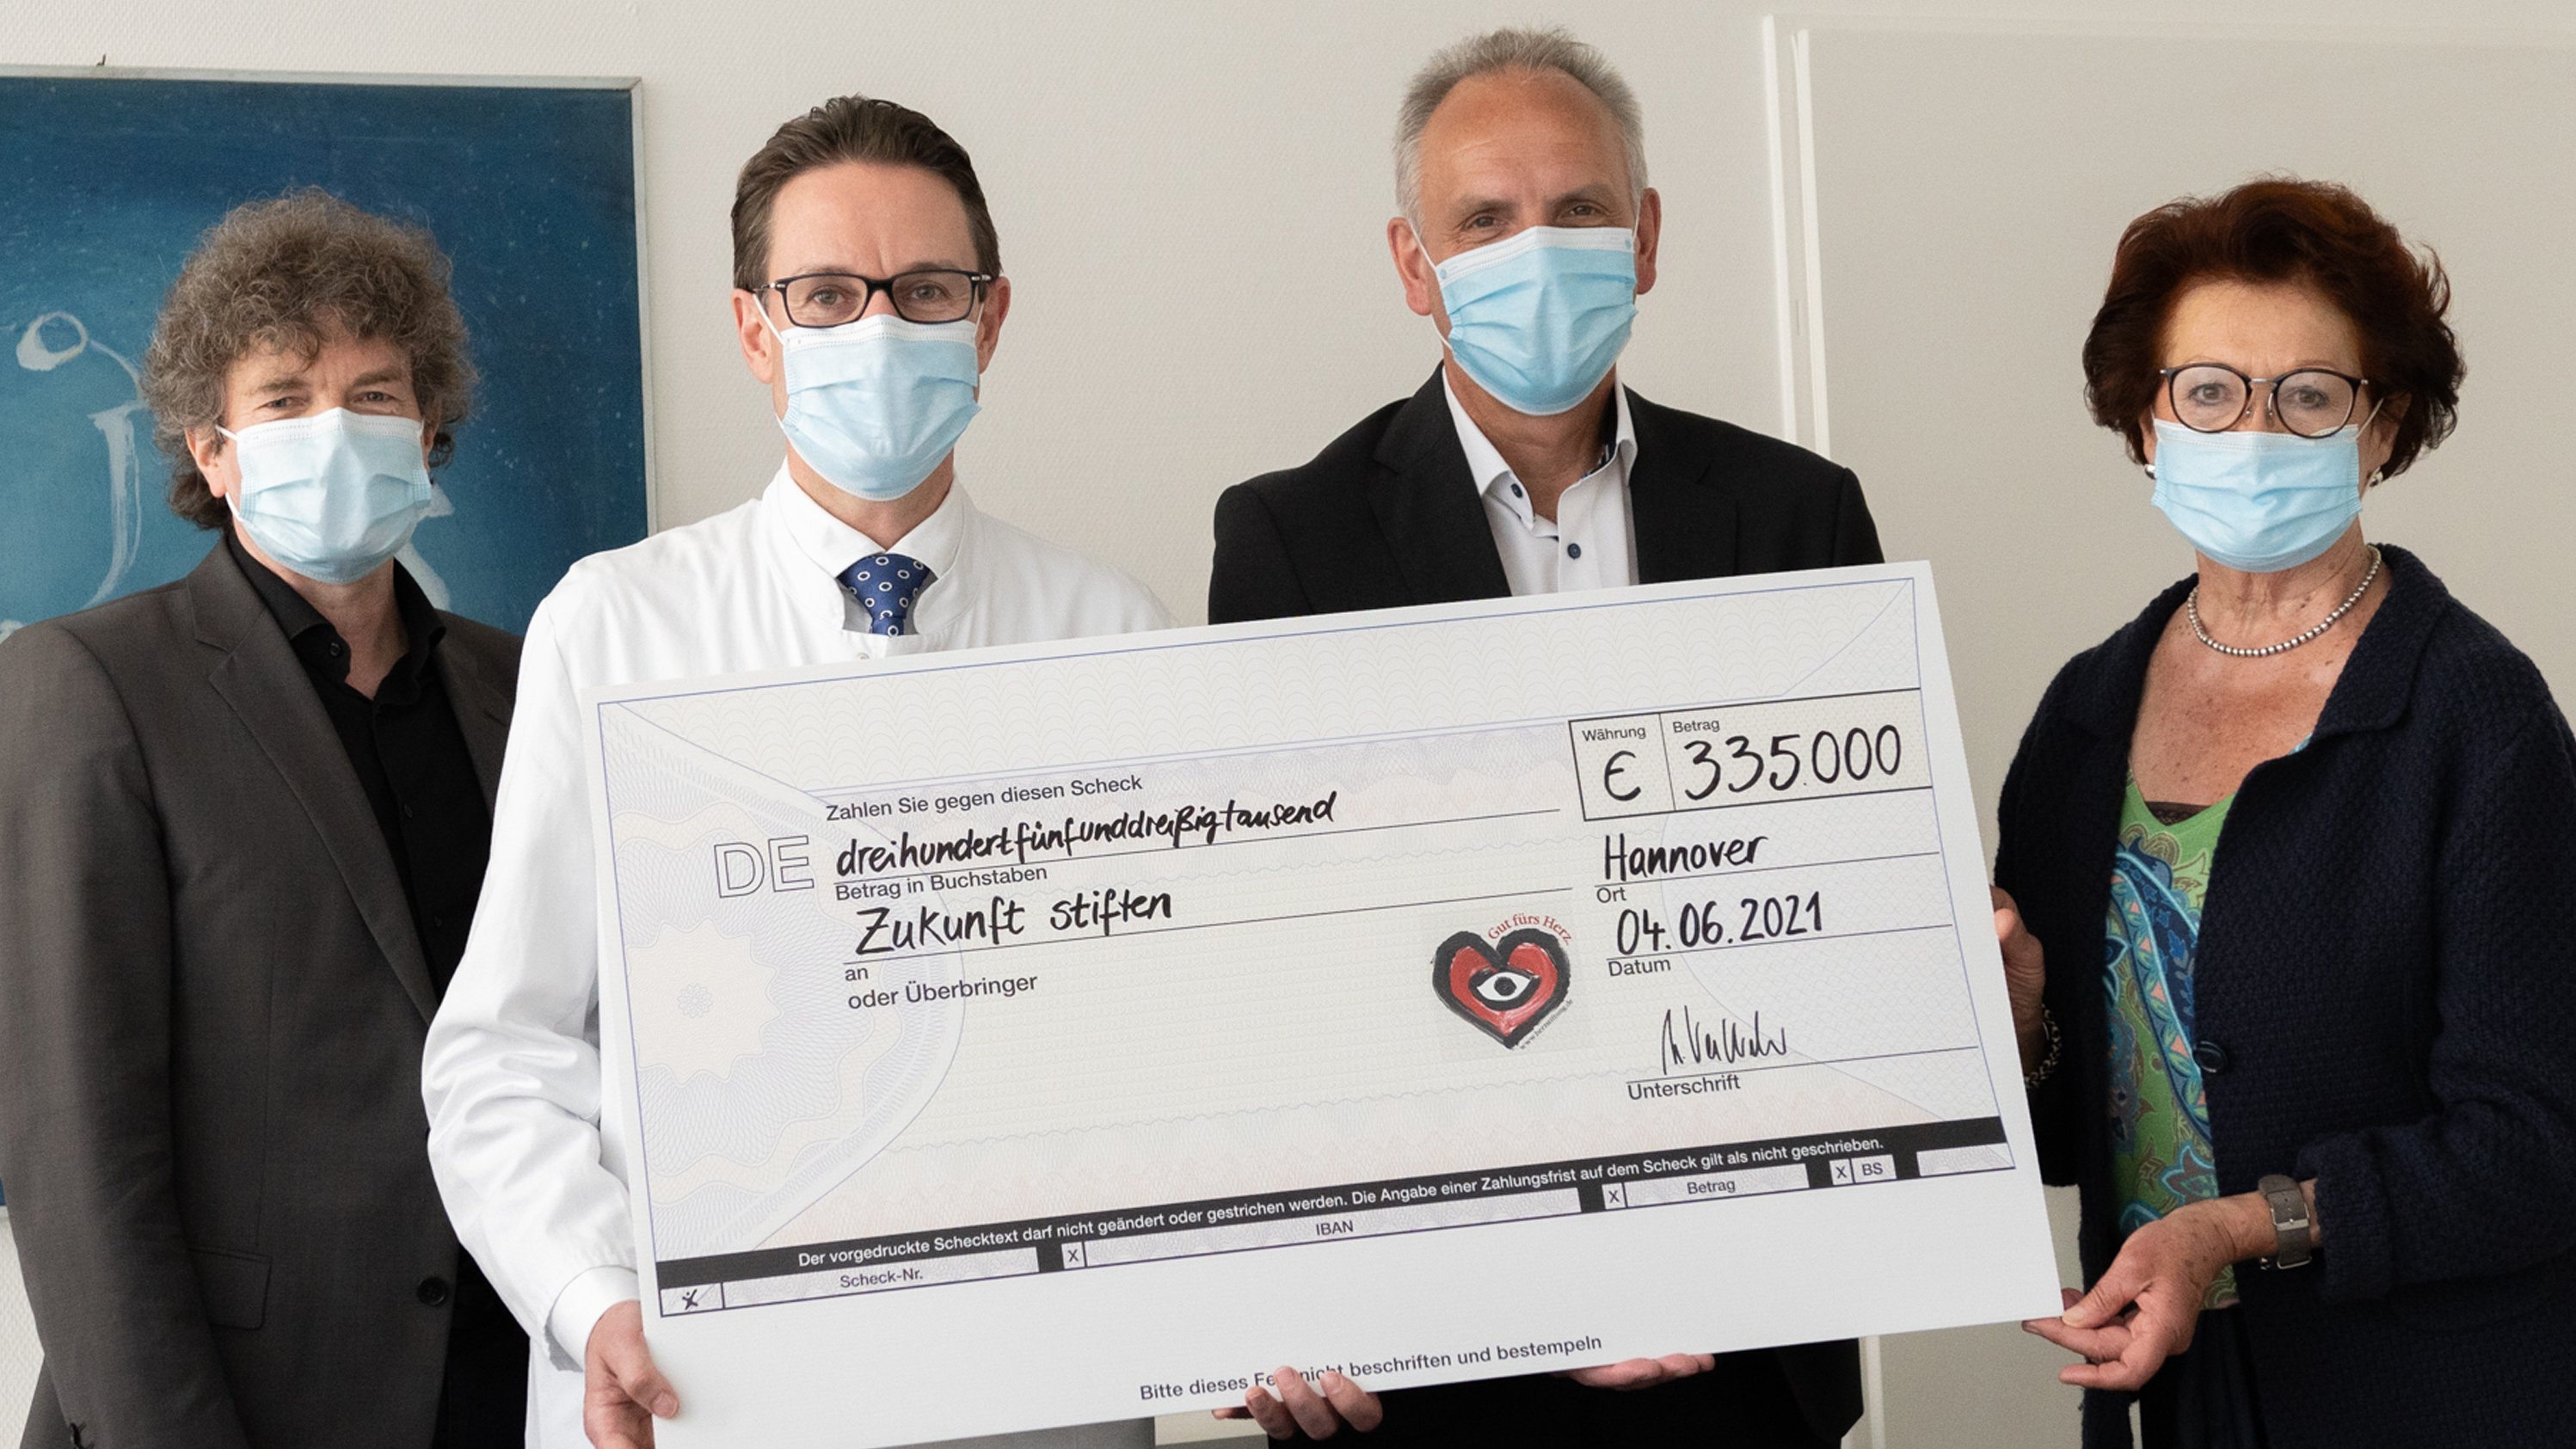 Dr. Eckhard Schenke, Professor Johann Bauersachs sowie Martin Vestweber und Gisela Neubauer von der Deutschen Herzstiftung halten gemeinsam einen Spendenscheck hoch. 